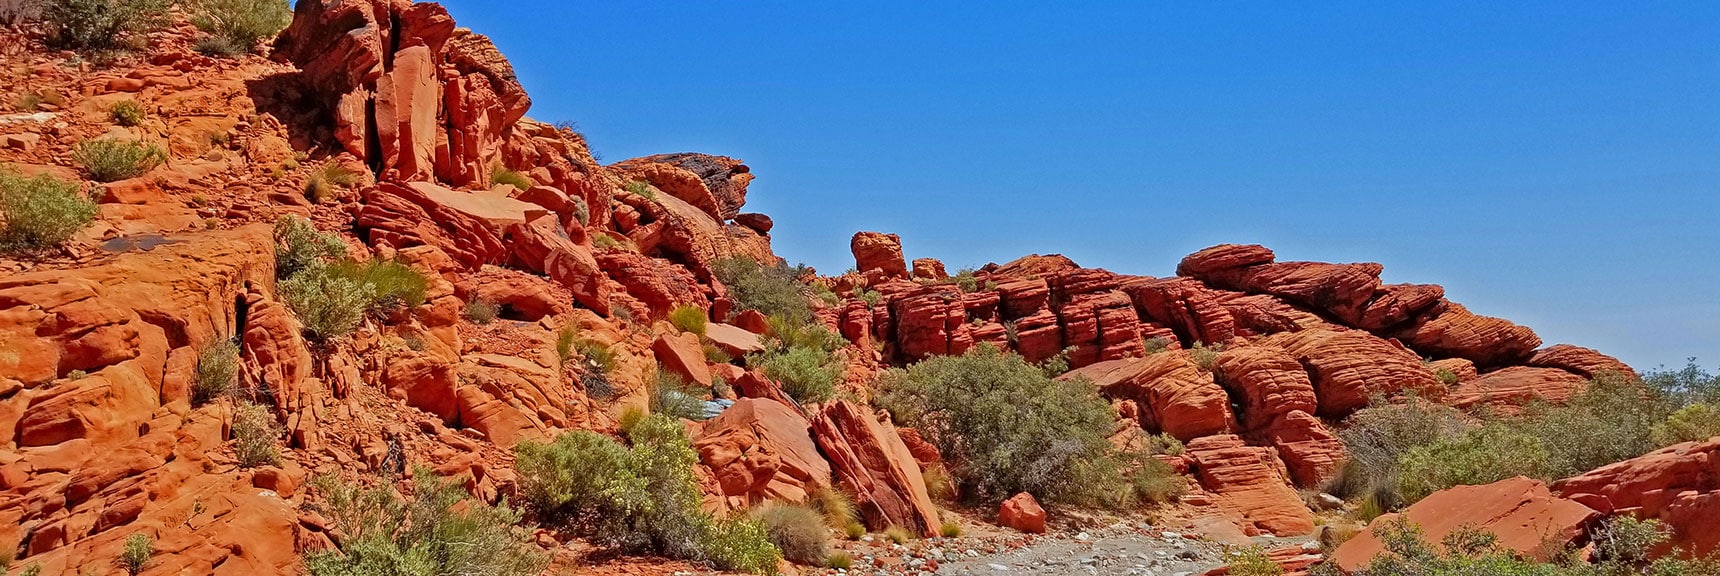 More Little Red Rock Wanderings | Little Red Rock Las Vegas, Nevada, Near La Madre Mountains Wilderness